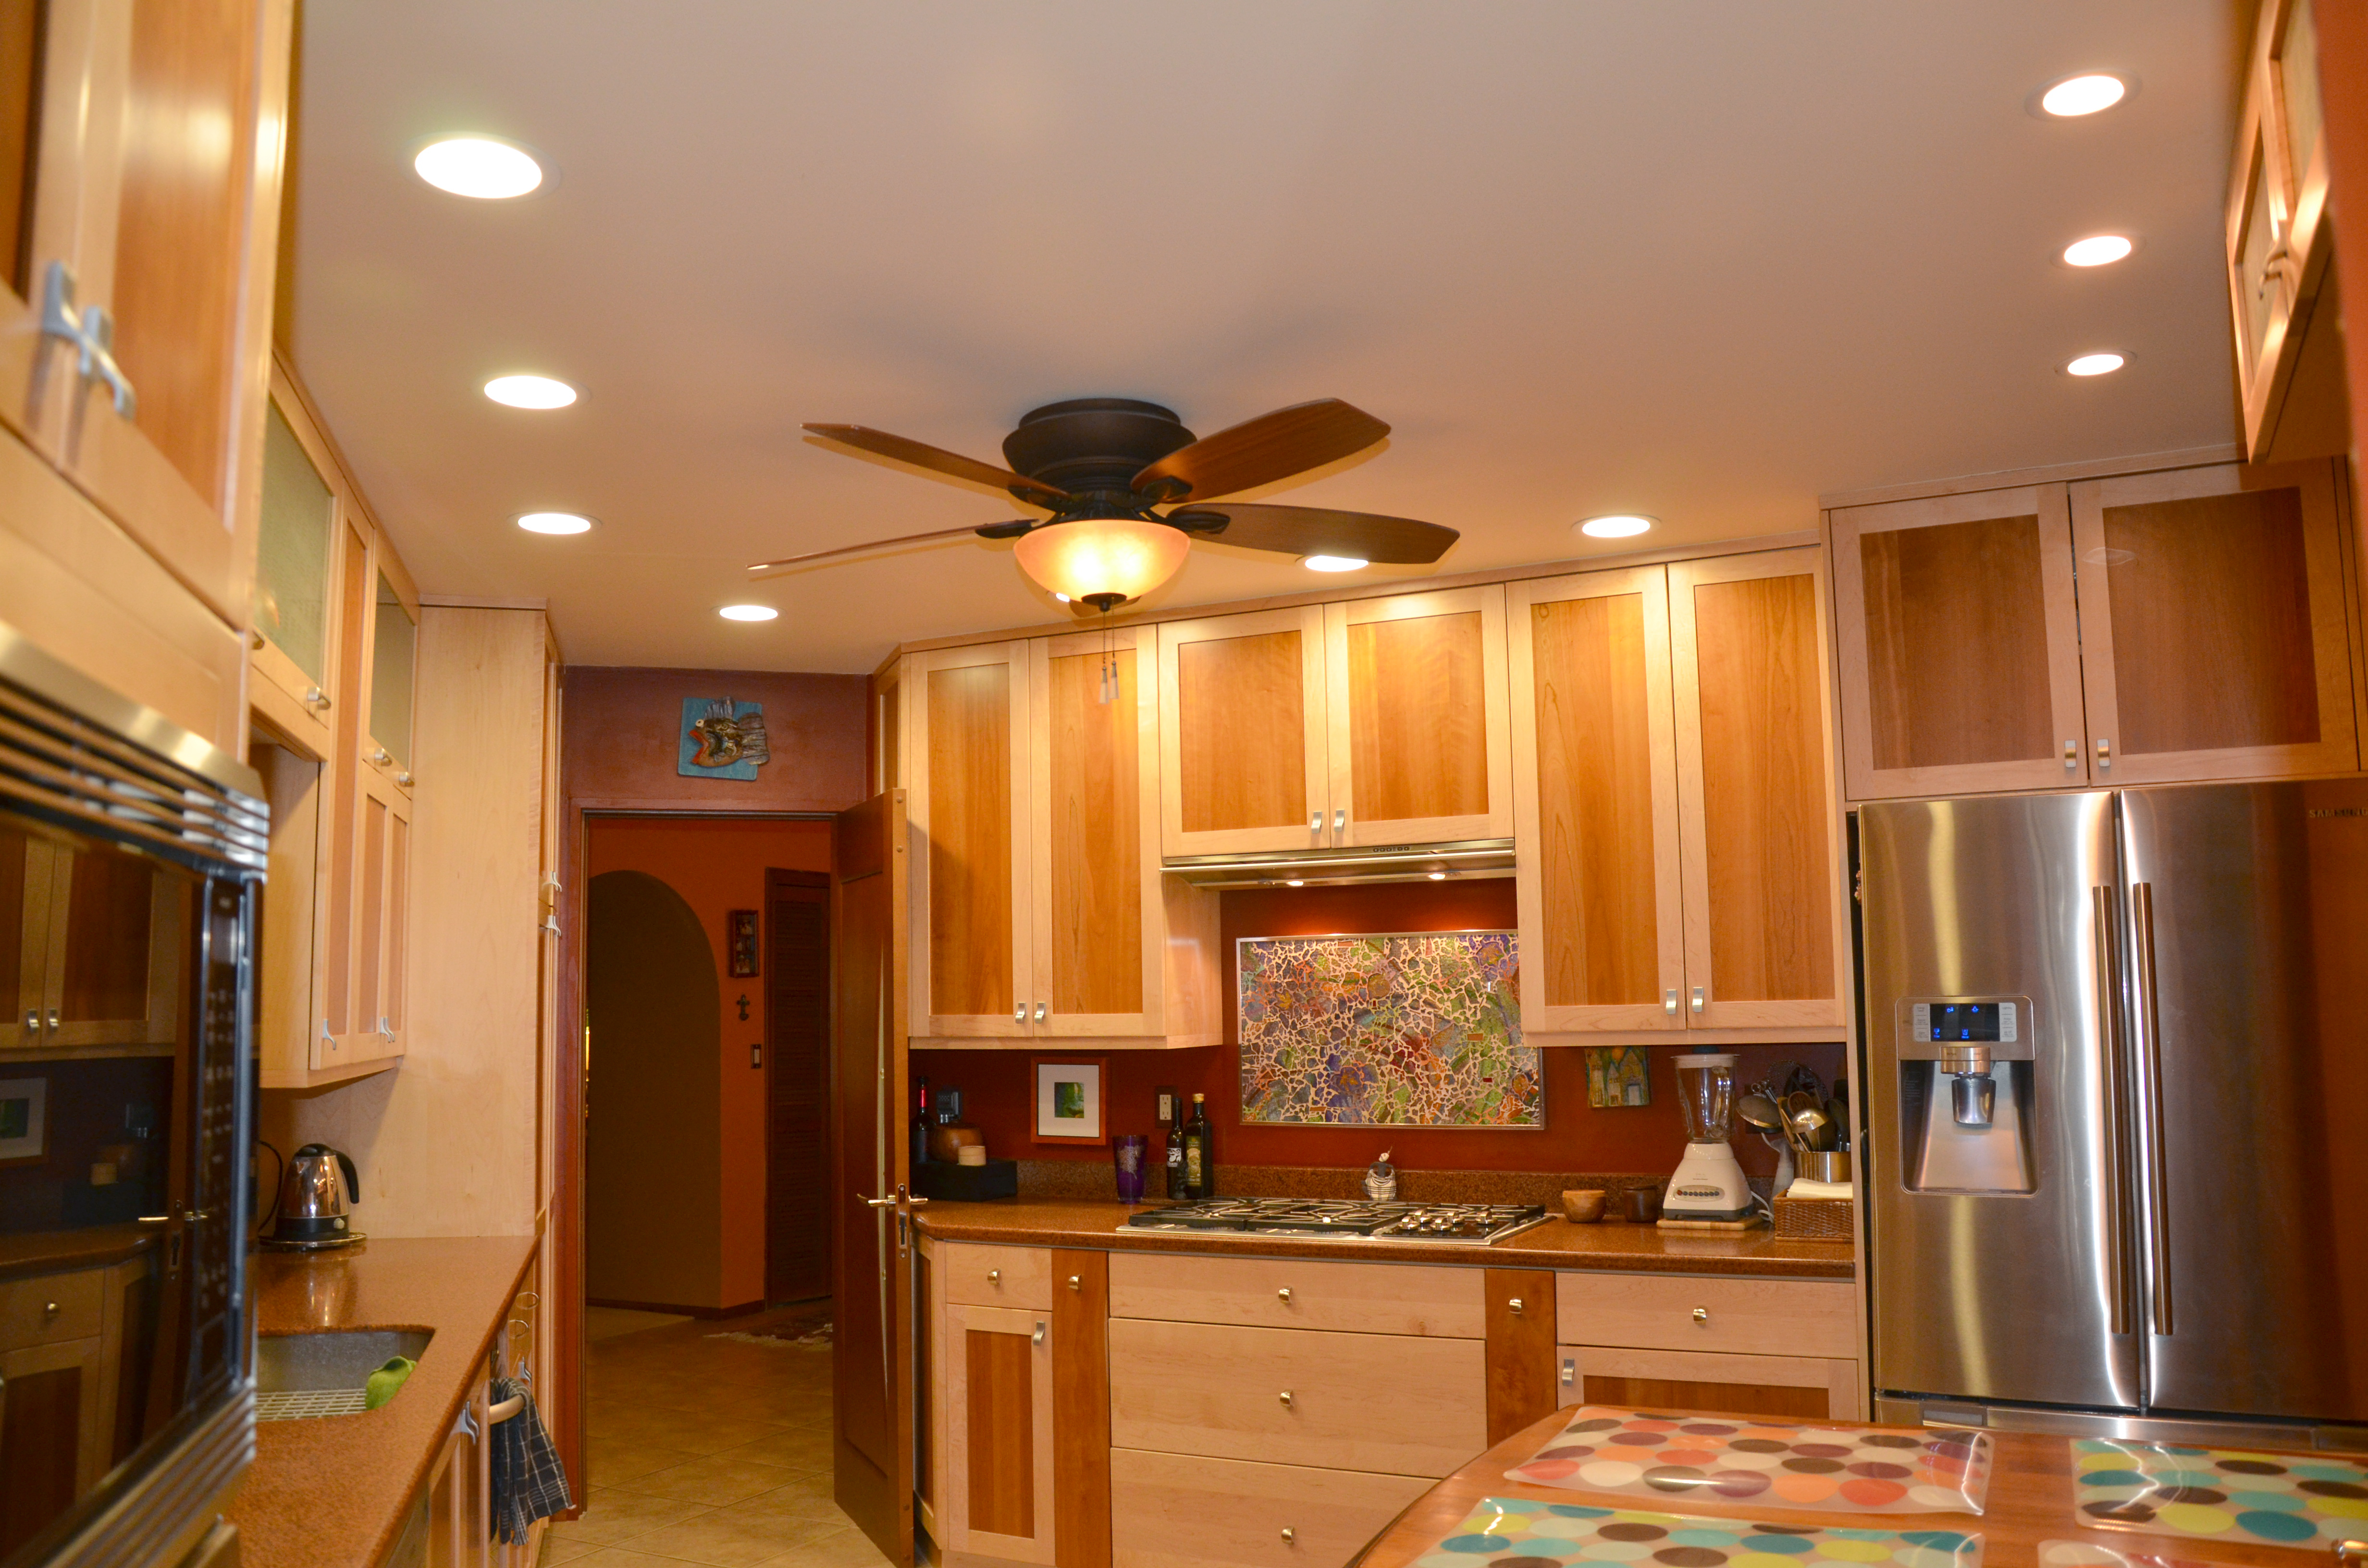  recessed kitchen lighting fixtures